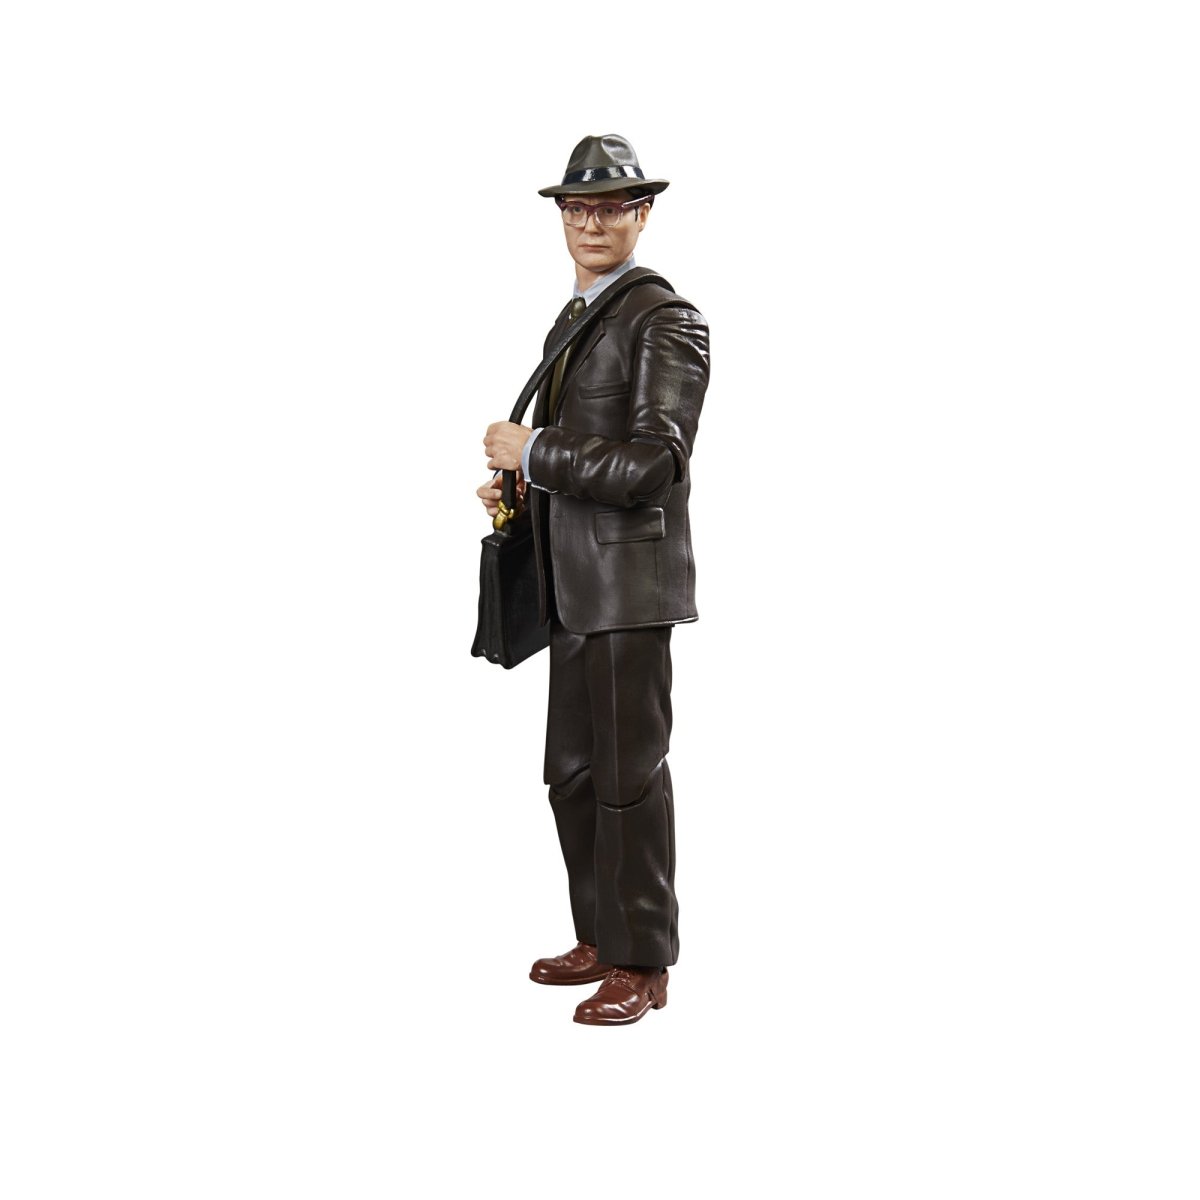 Indiana Jones Adventure Series Doctor Jürgen Voller 6-Inch Action Figure Pop-O-Loco